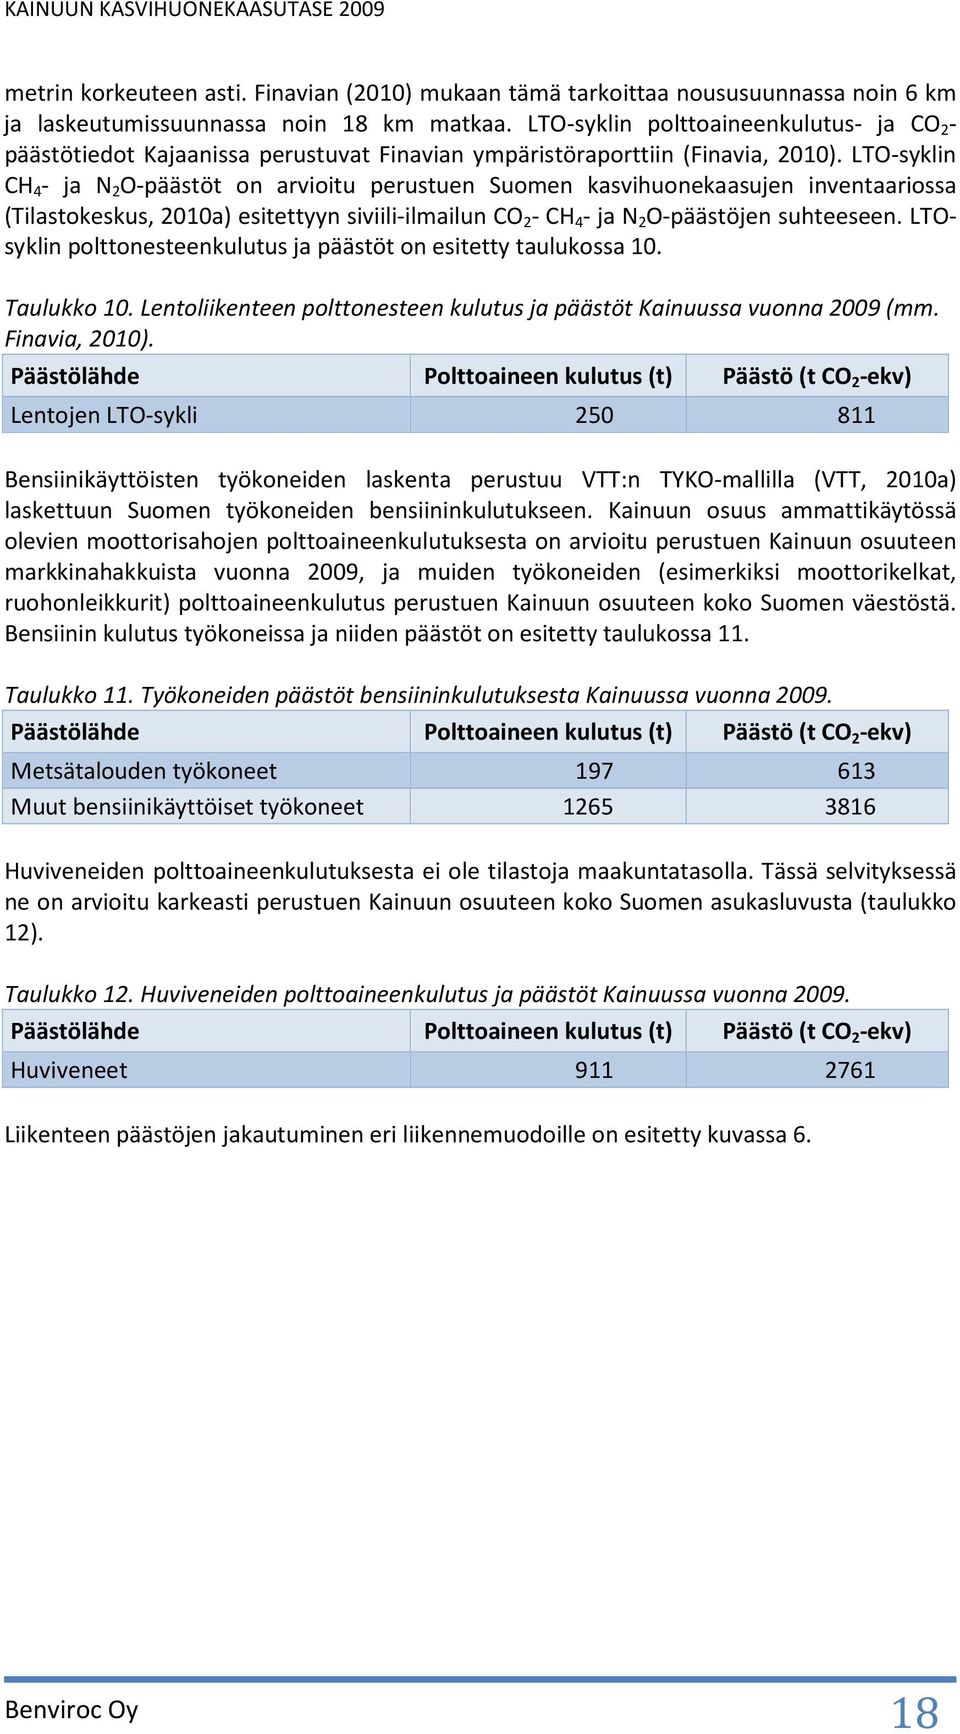 LTO-syklin CH 4 - ja N 2 O-päästöt on arvioitu perustuen Suomen kasvihuonekaasujen inventaariossa (Tilastokeskus, 2010a) esitettyyn siviili-ilmailun CO 2 - CH 4 - ja N 2 O-päästöjen suhteeseen.